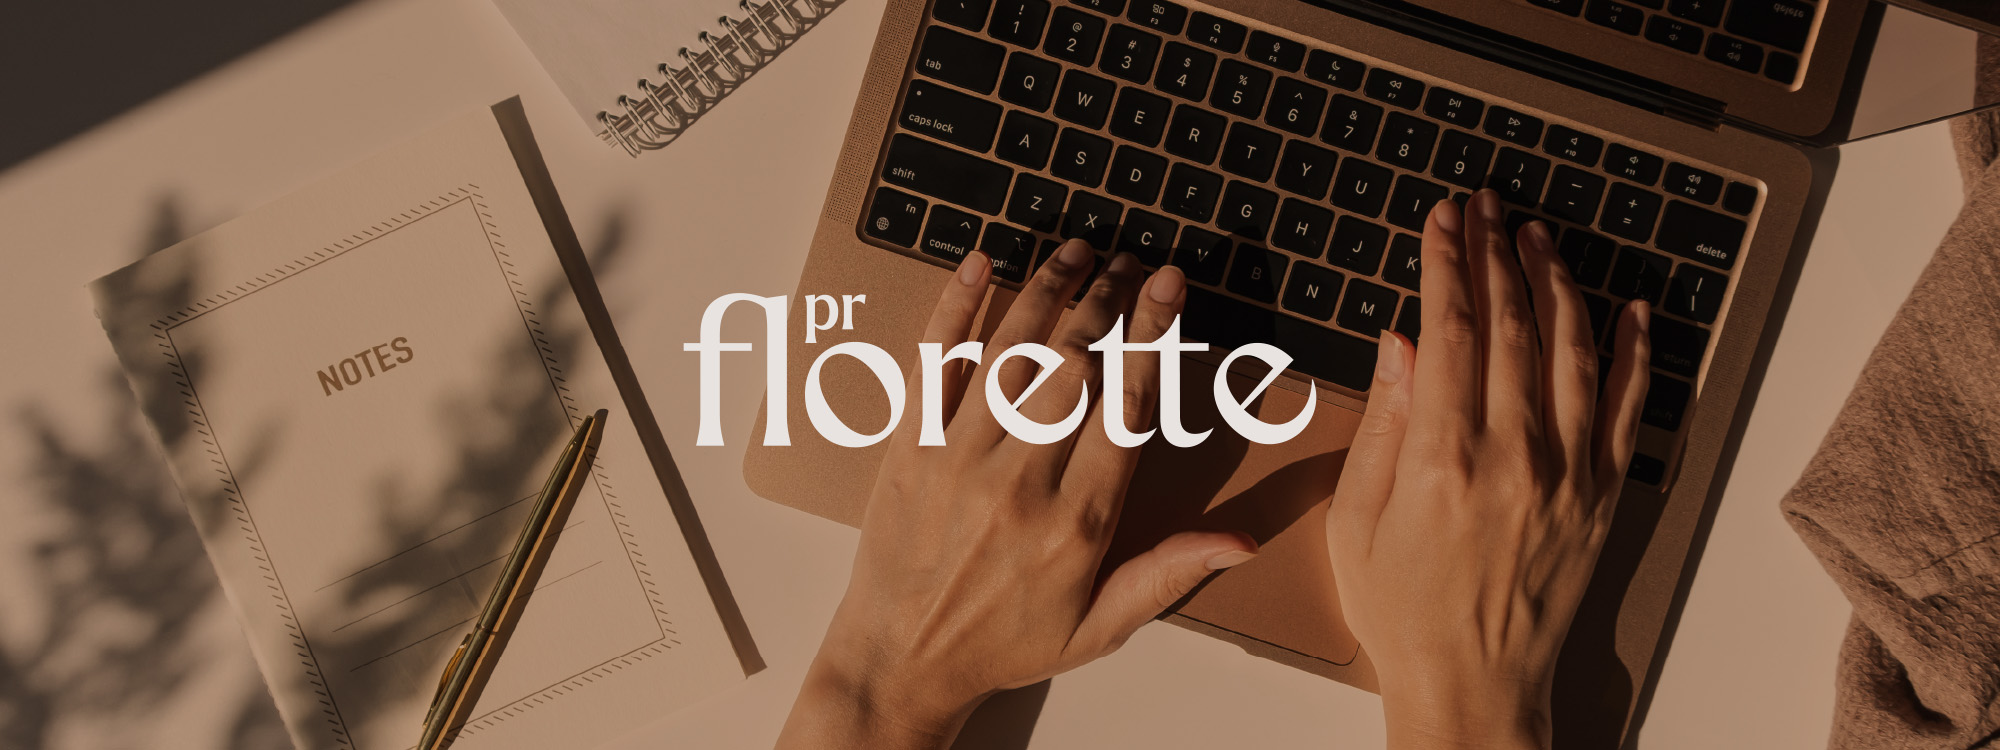 Florette PR Portfolio 2